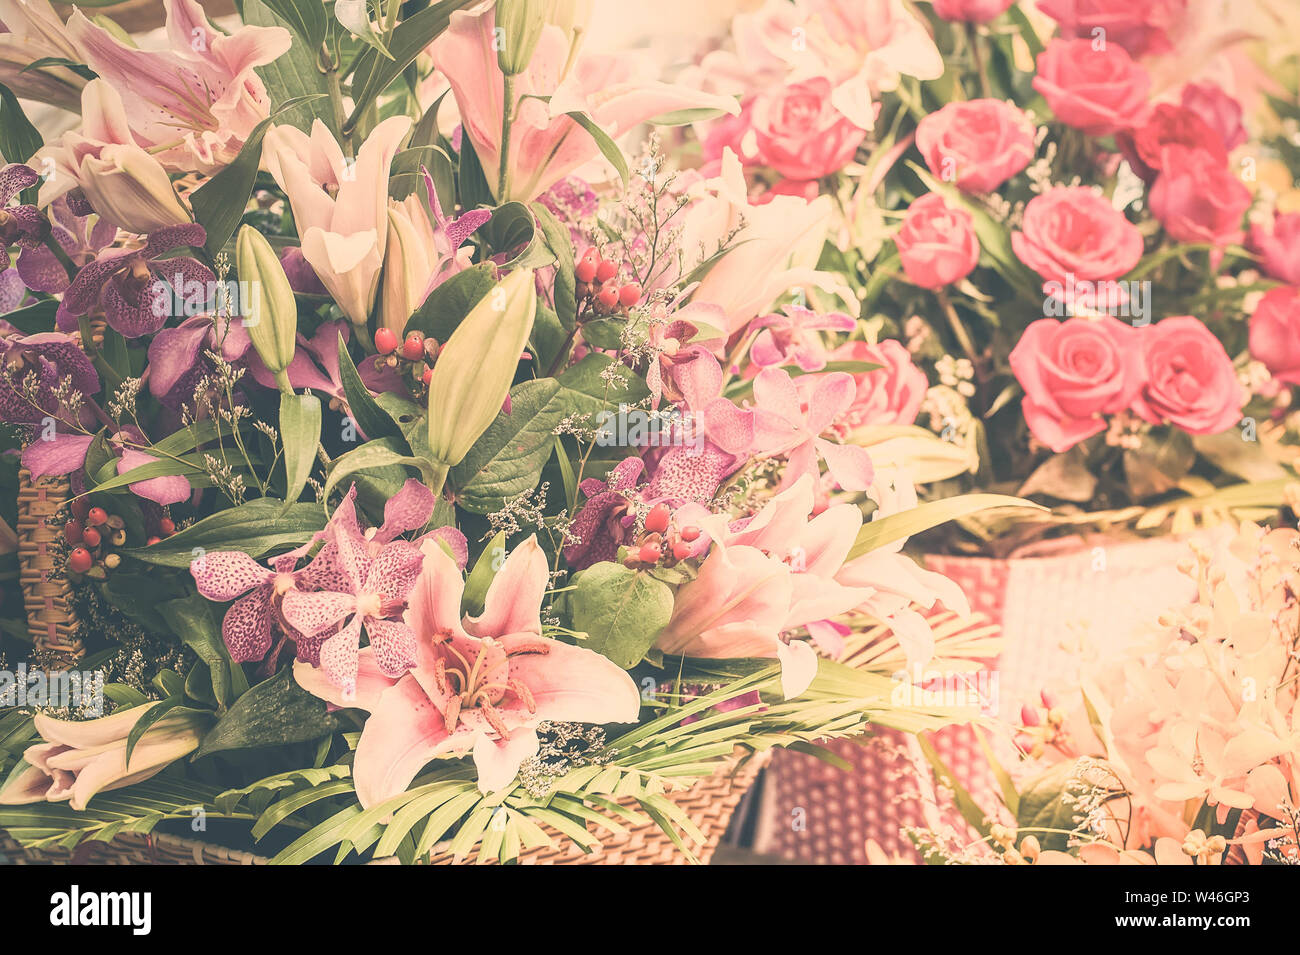 Schöne verschiedene Blumen Blumensträuße im Shop. Florale Komposition in der modernen shabby chic Style Stockfoto